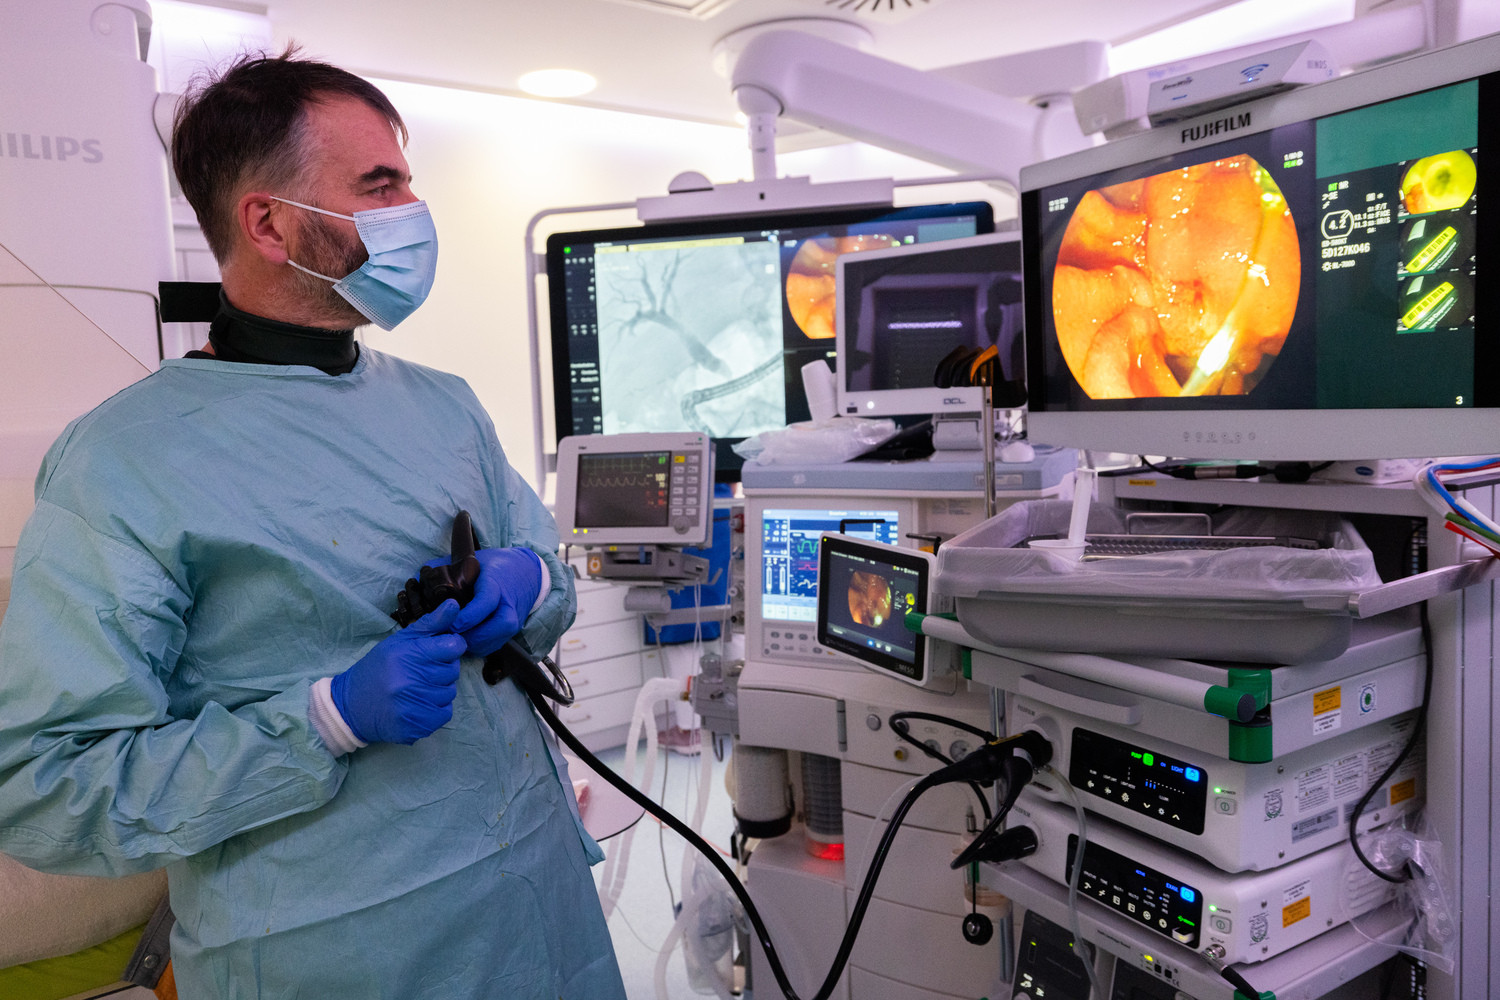 Dr. Jürgen Feisthammel bei einer ERCP-Untersuchung mit Hilfe des neuen Röntgen-Geräts der UKL-Endoskopie. „Das Gerät hat unsere Vorstellungen erfüllt, die Arbeit macht Spaß“, sagt er.